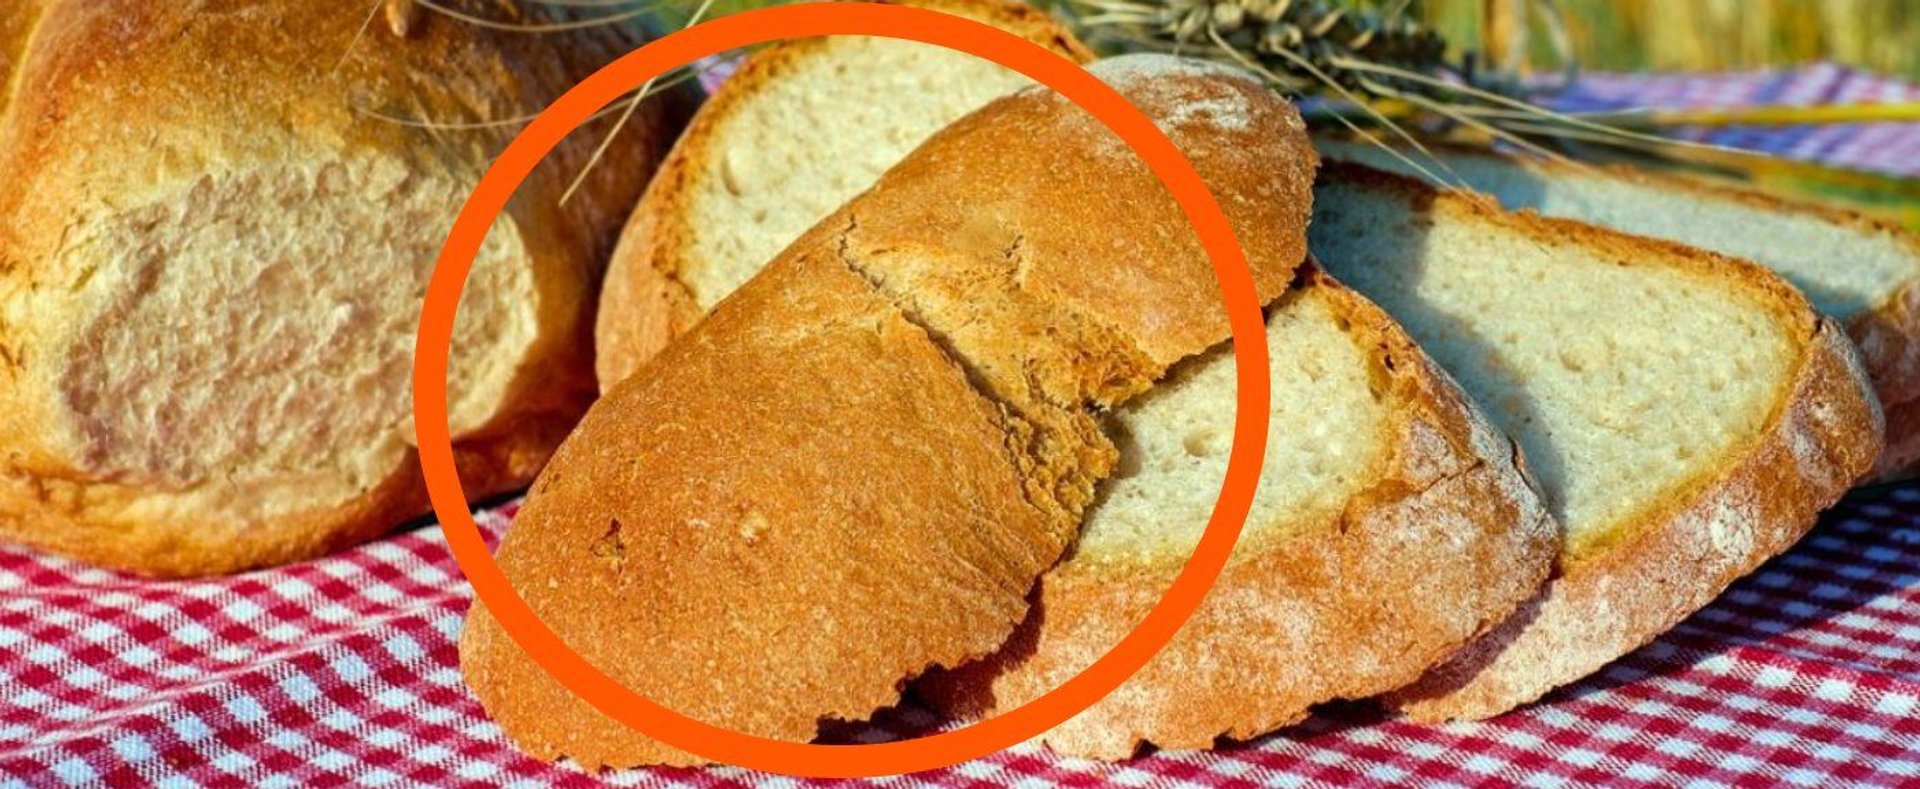 Pieczenie chleba jest proste